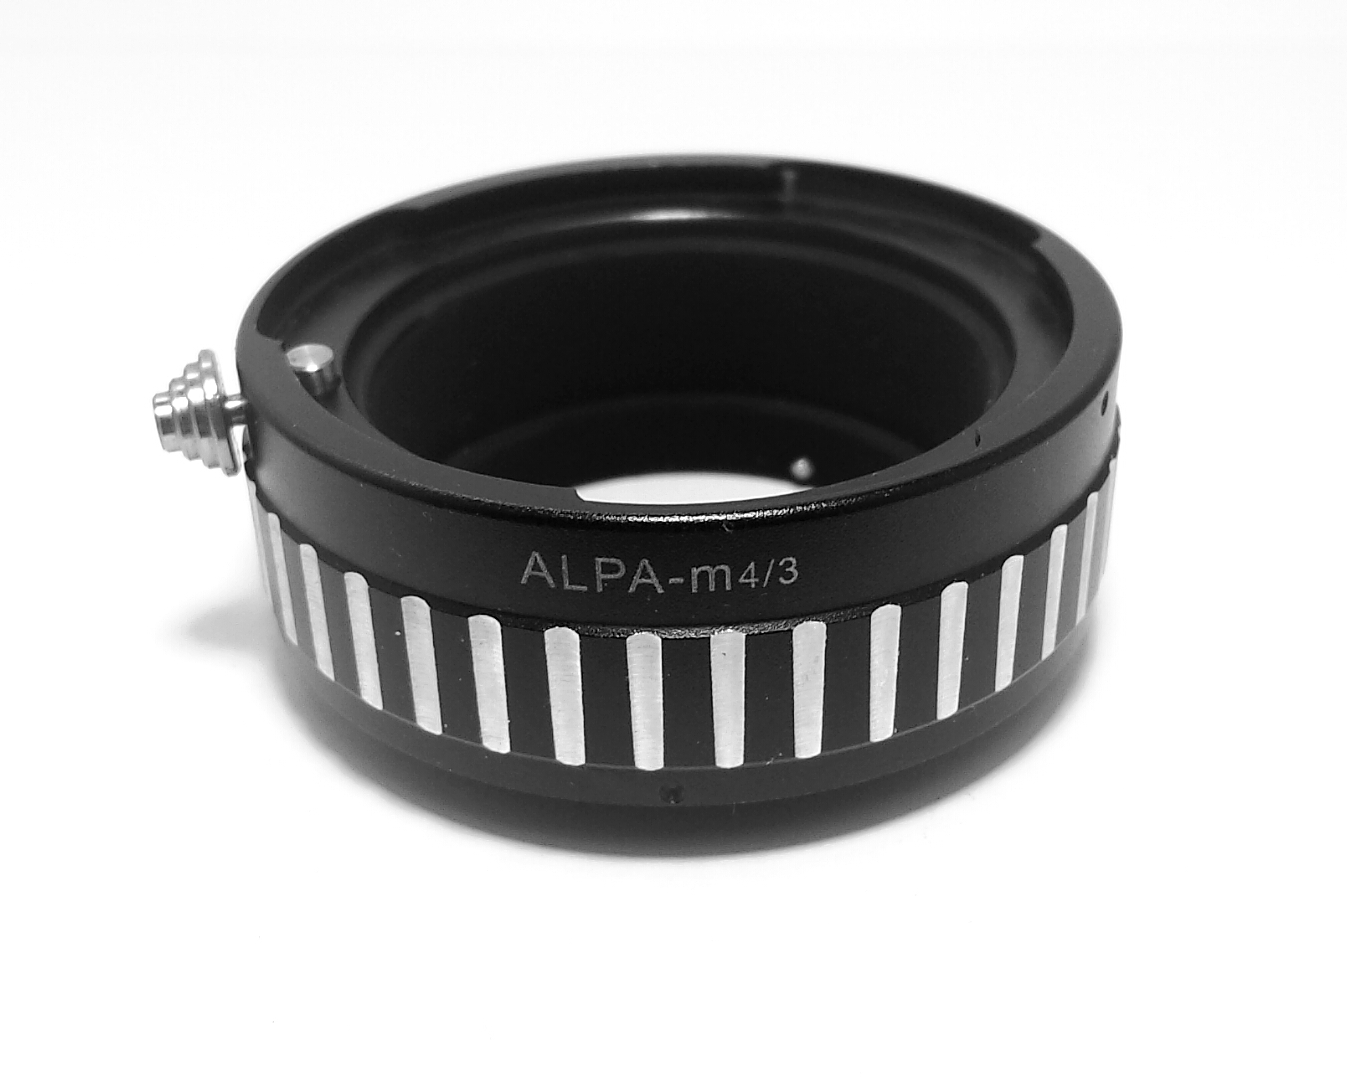 Alpa Lens to Mirco 4/3 Camera Body